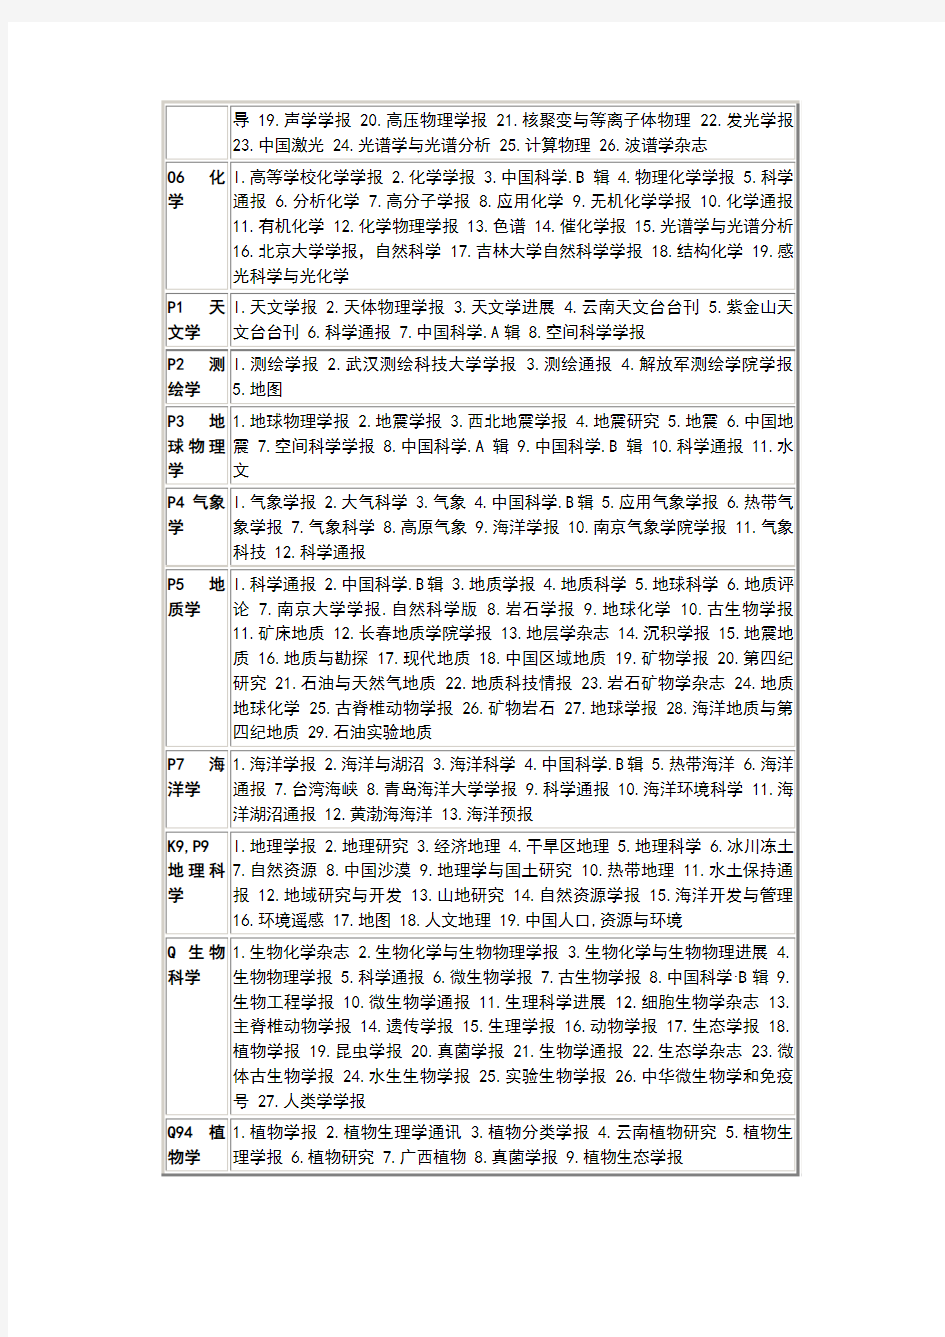 中文核心期刊表